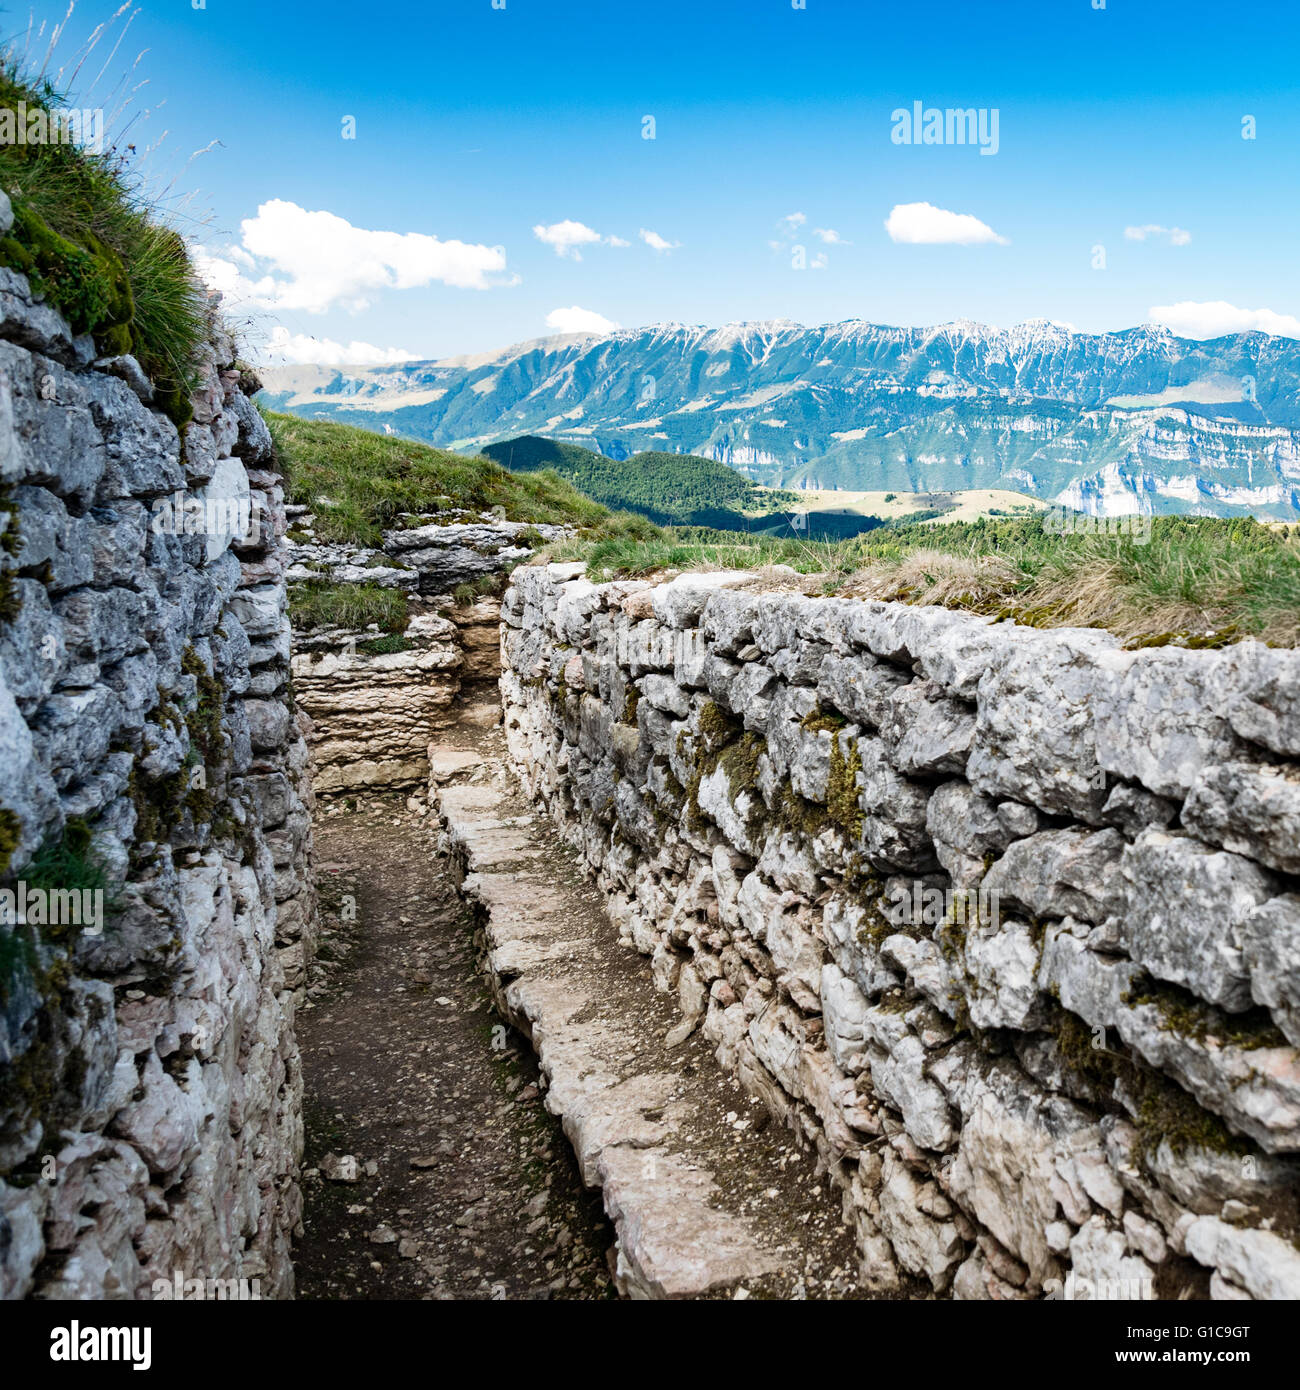 Tranchée creusée dans la roche datant de la Première Guerre mondiale, situé sur les Alpes italiennes. Banque D'Images